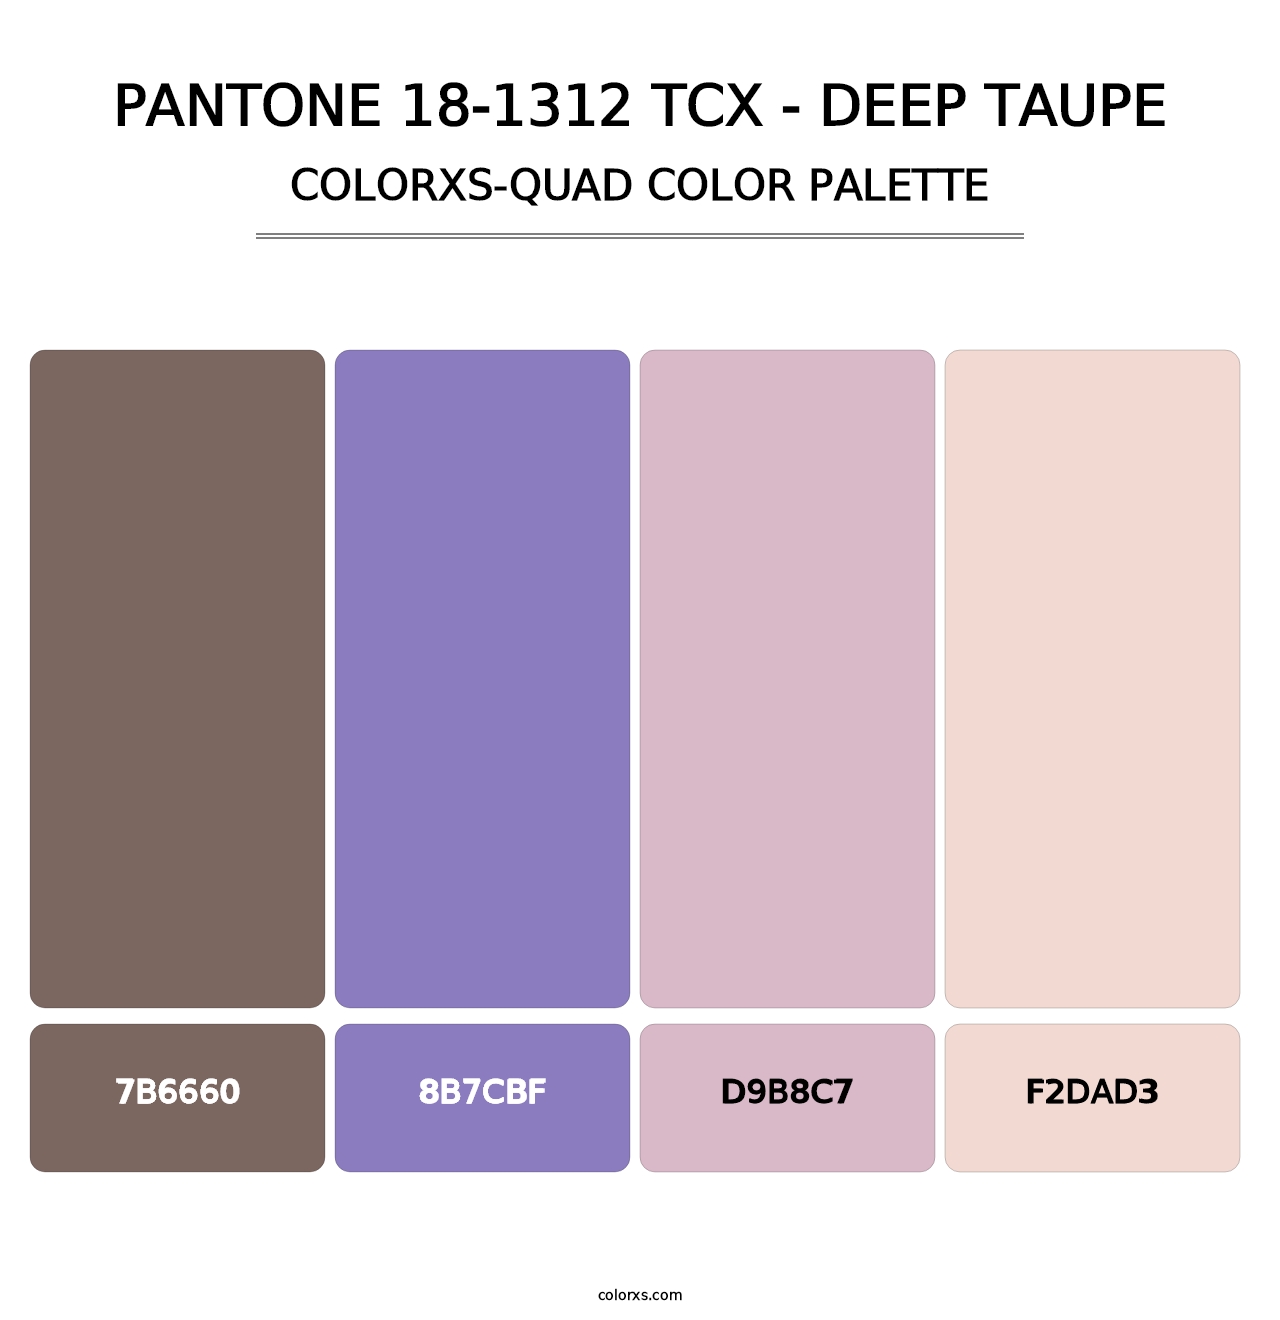 PANTONE 18-1312 TCX - Deep Taupe - Colorxs Quad Palette